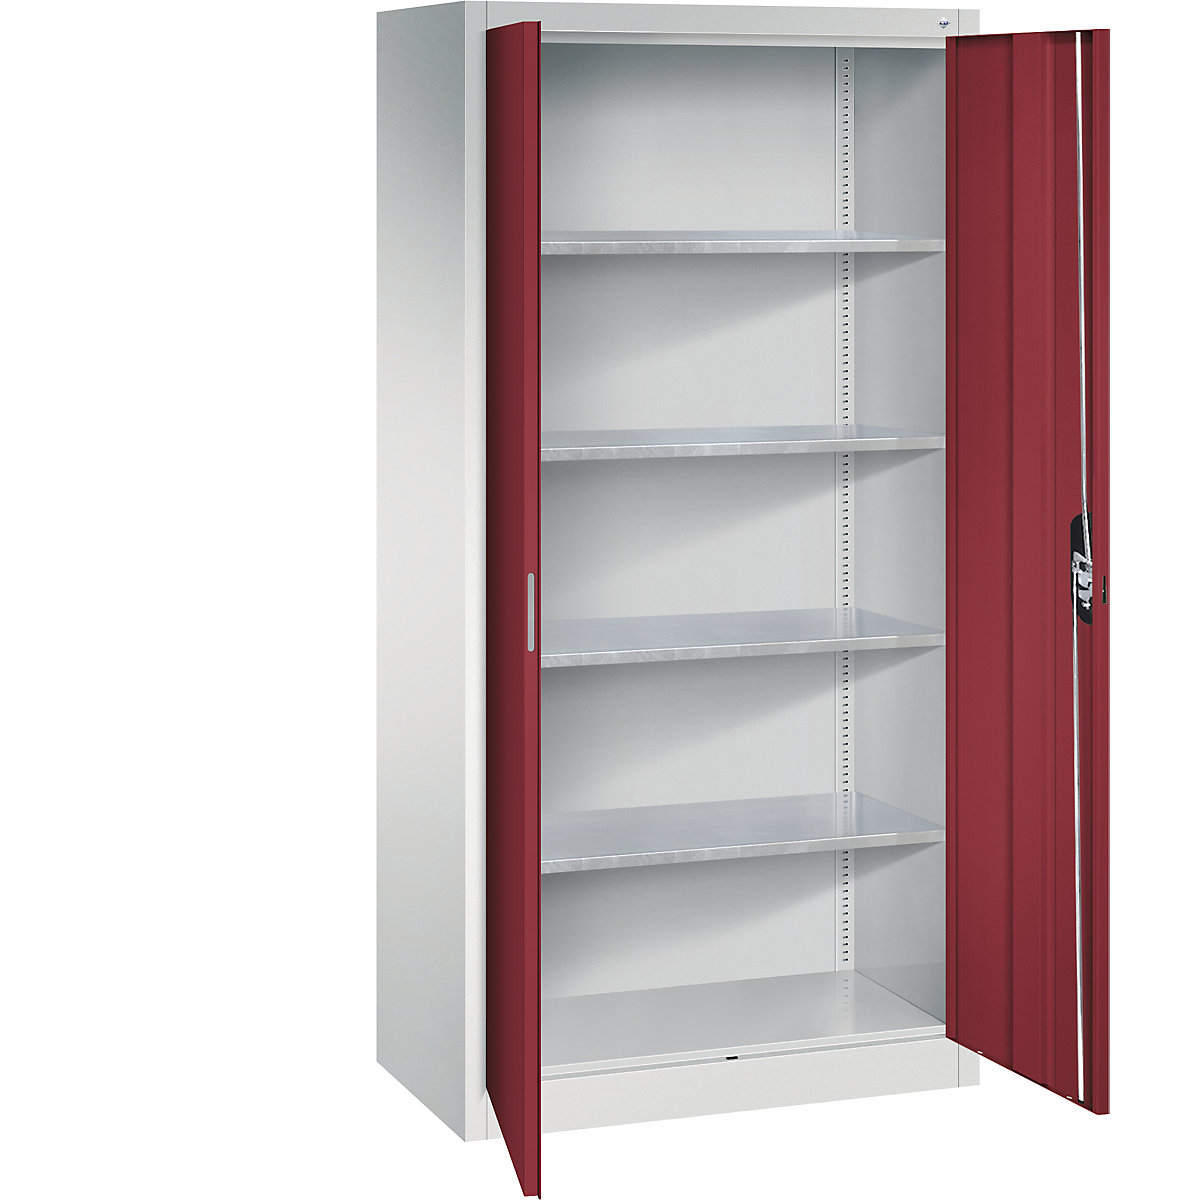 Warsztatowa szafka z drzwiami skrzydłowymi – C+P, wys. x szer. x głęb. 1950 x 930 x 500 mm, jasnoszara / rubinowo-czerwona-9